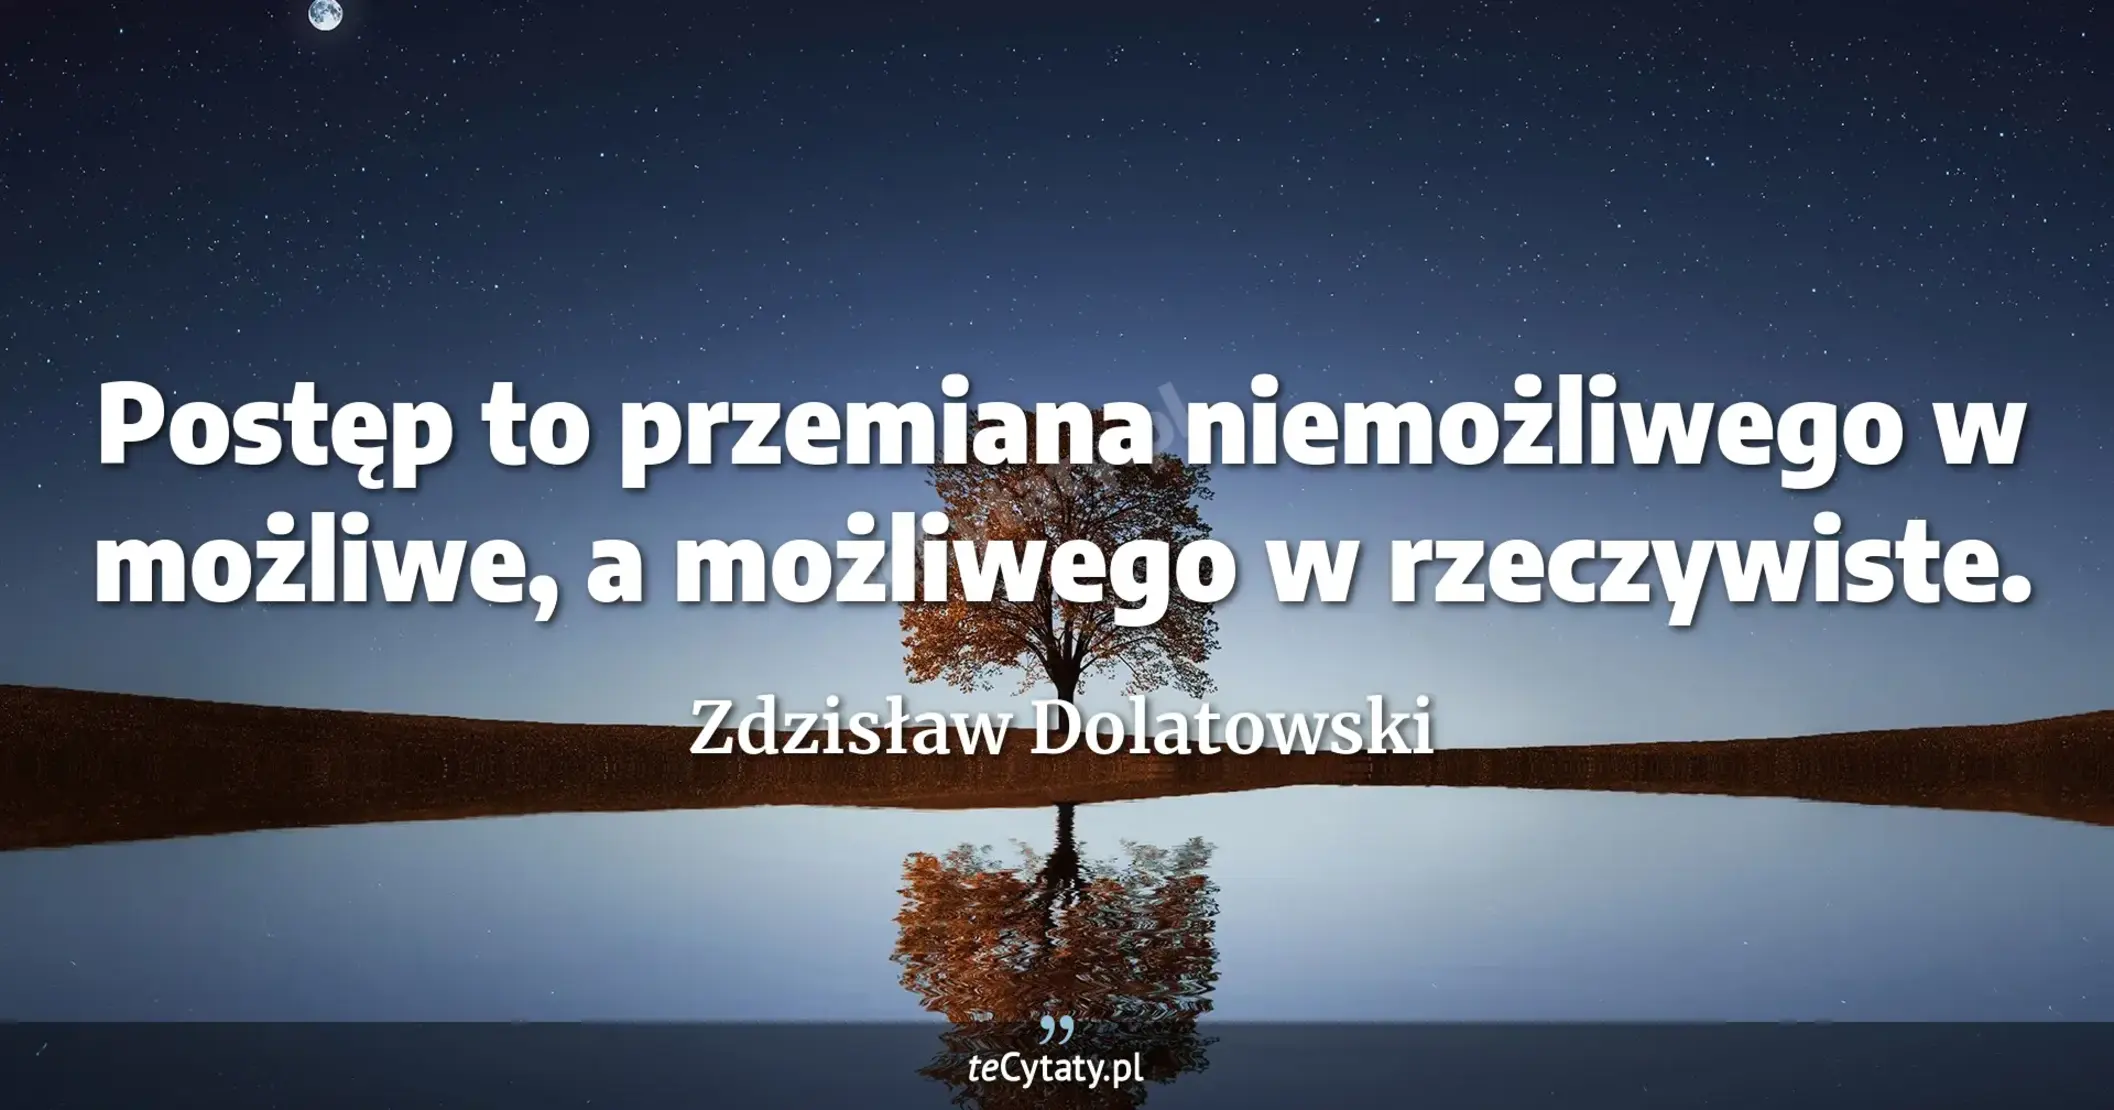 Postęp to przemiana niemożliwego w możliwe, a możliwego w rzeczywiste. - Zdzisław Dolatowski